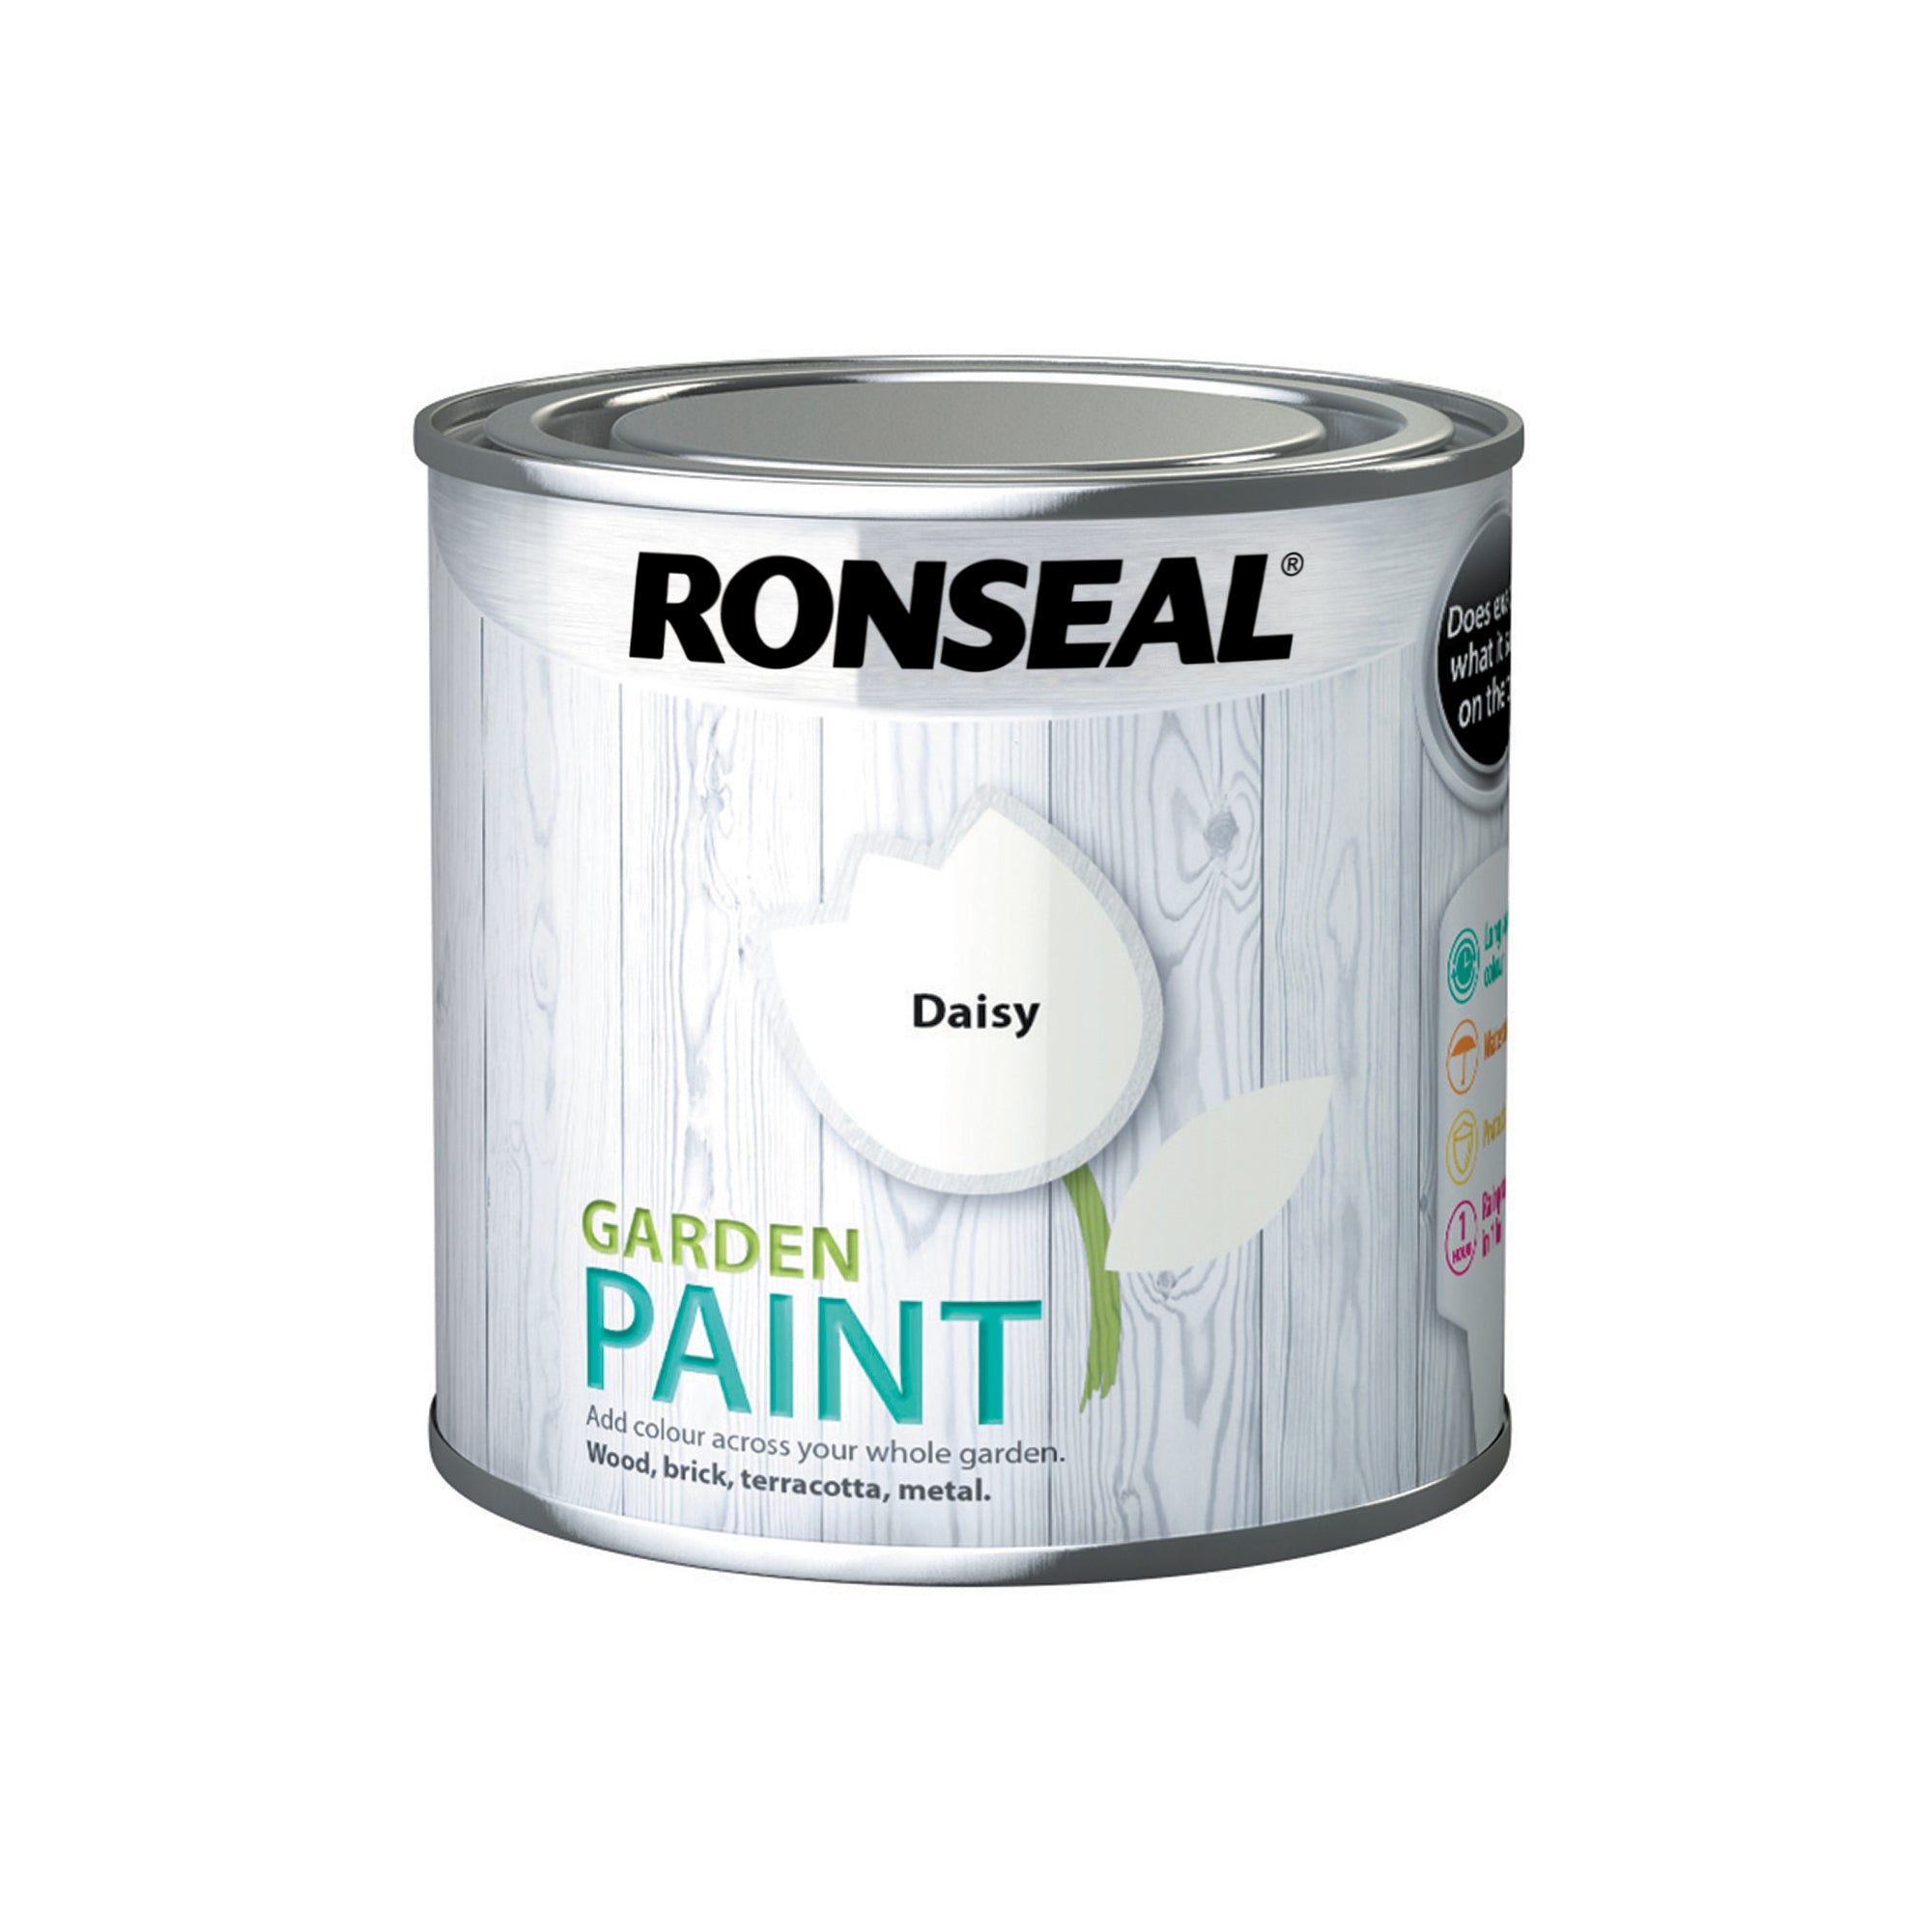 Ronseal Garden Paint - Daisy 250ml